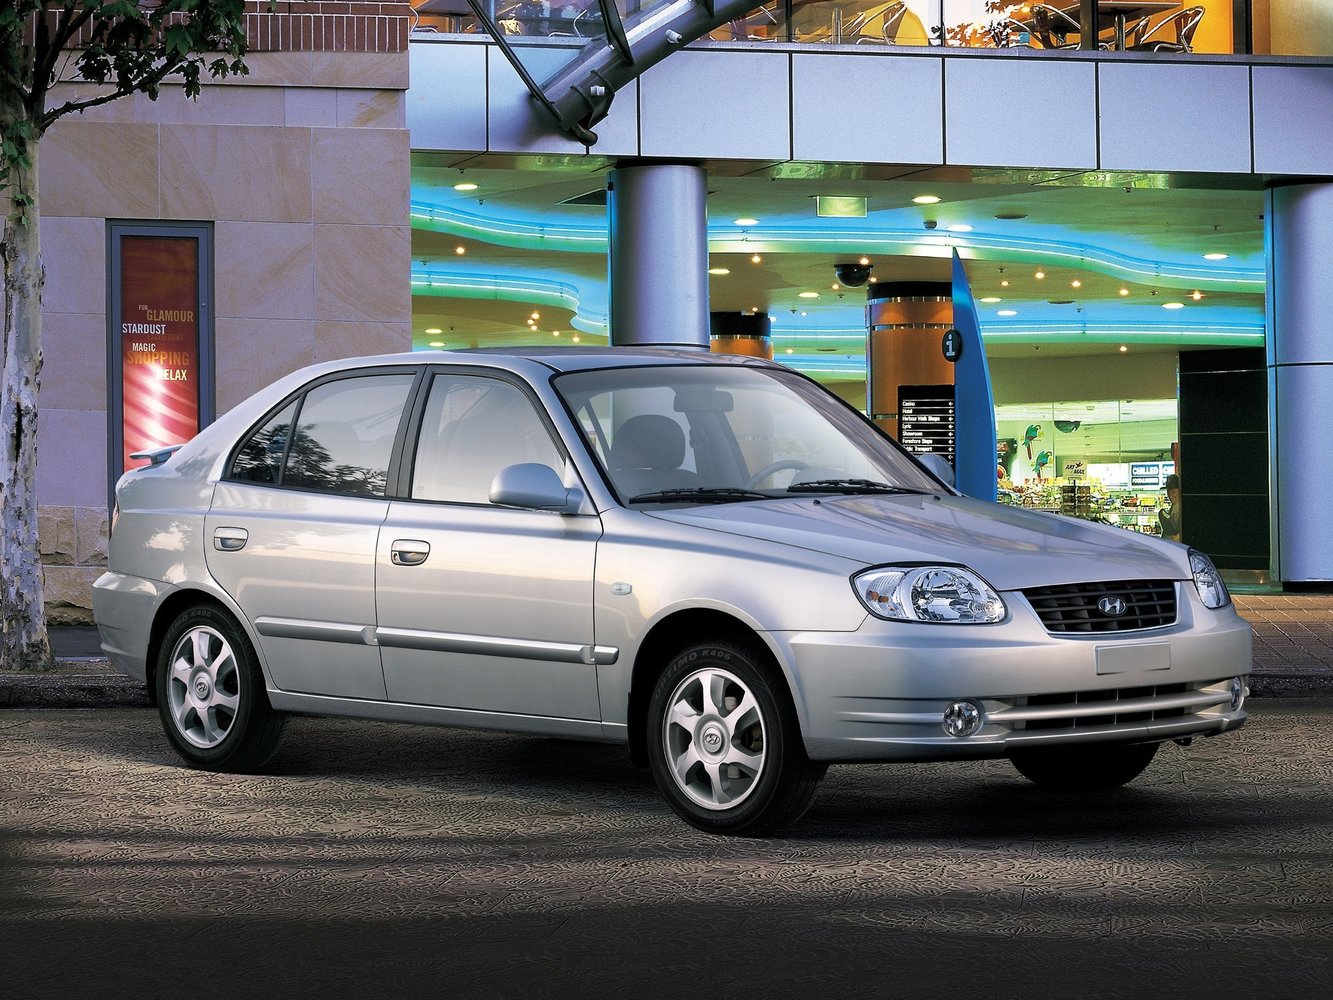 хэтчбек 5 дв. Hyundai Accent 2003 - 2006г выпуска модификация 1.3 AT (75 л.с.)